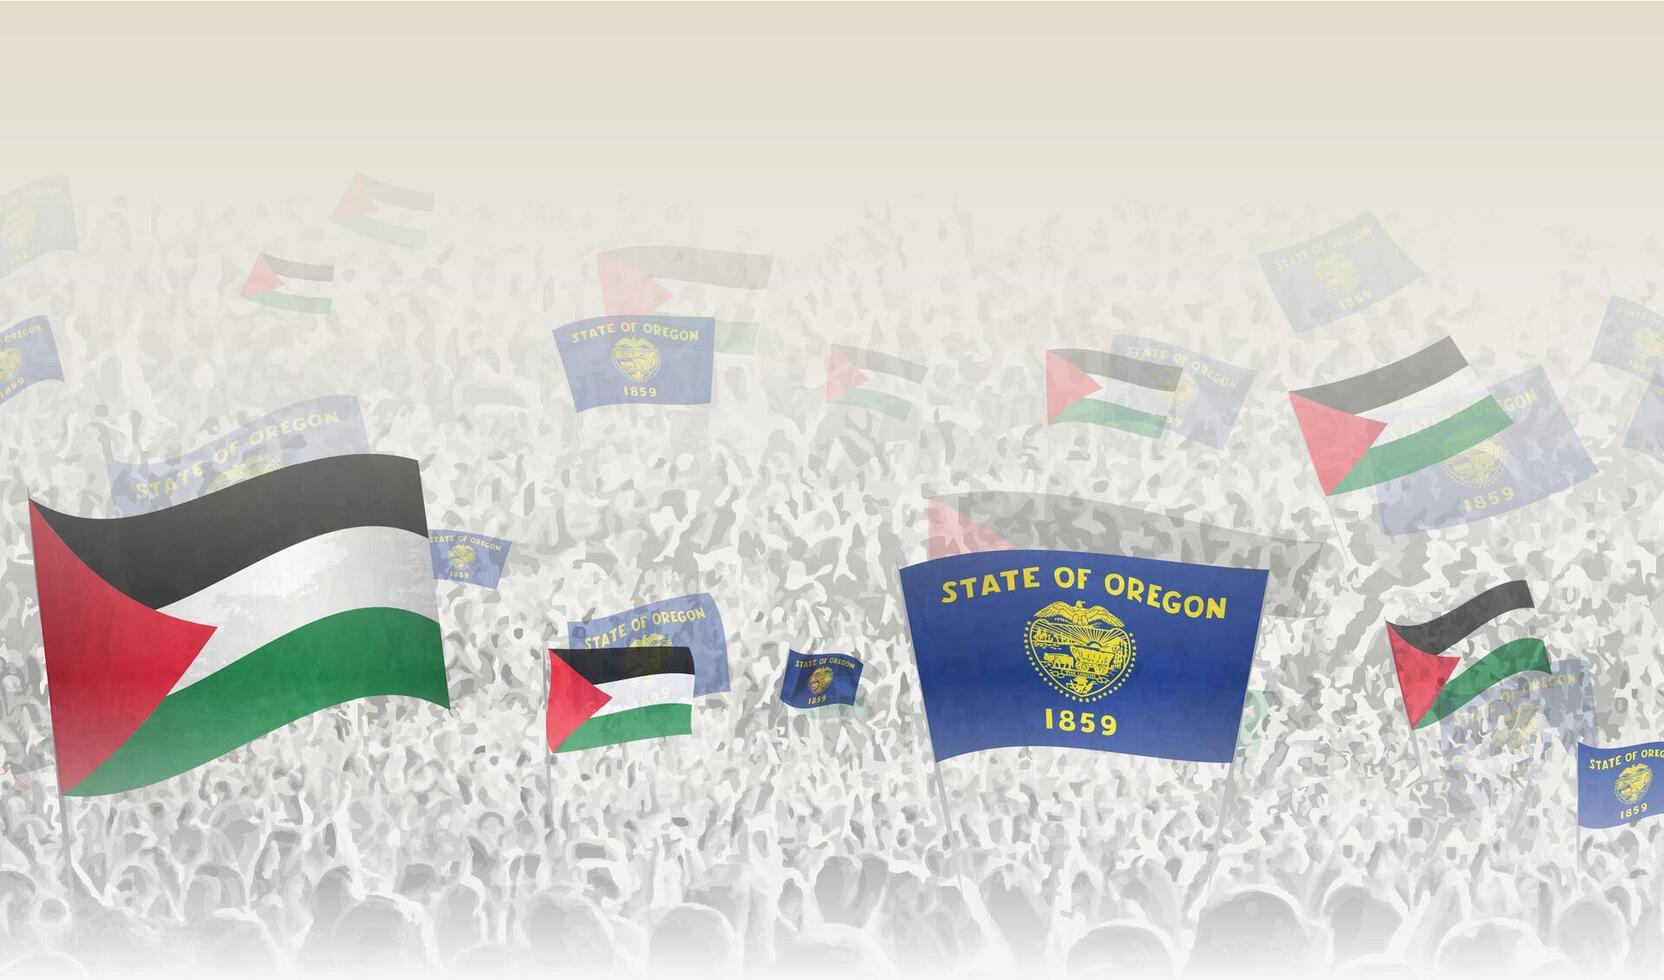 Palestine et Oregon drapeaux dans une foule de applaudissement personnes. vecteur